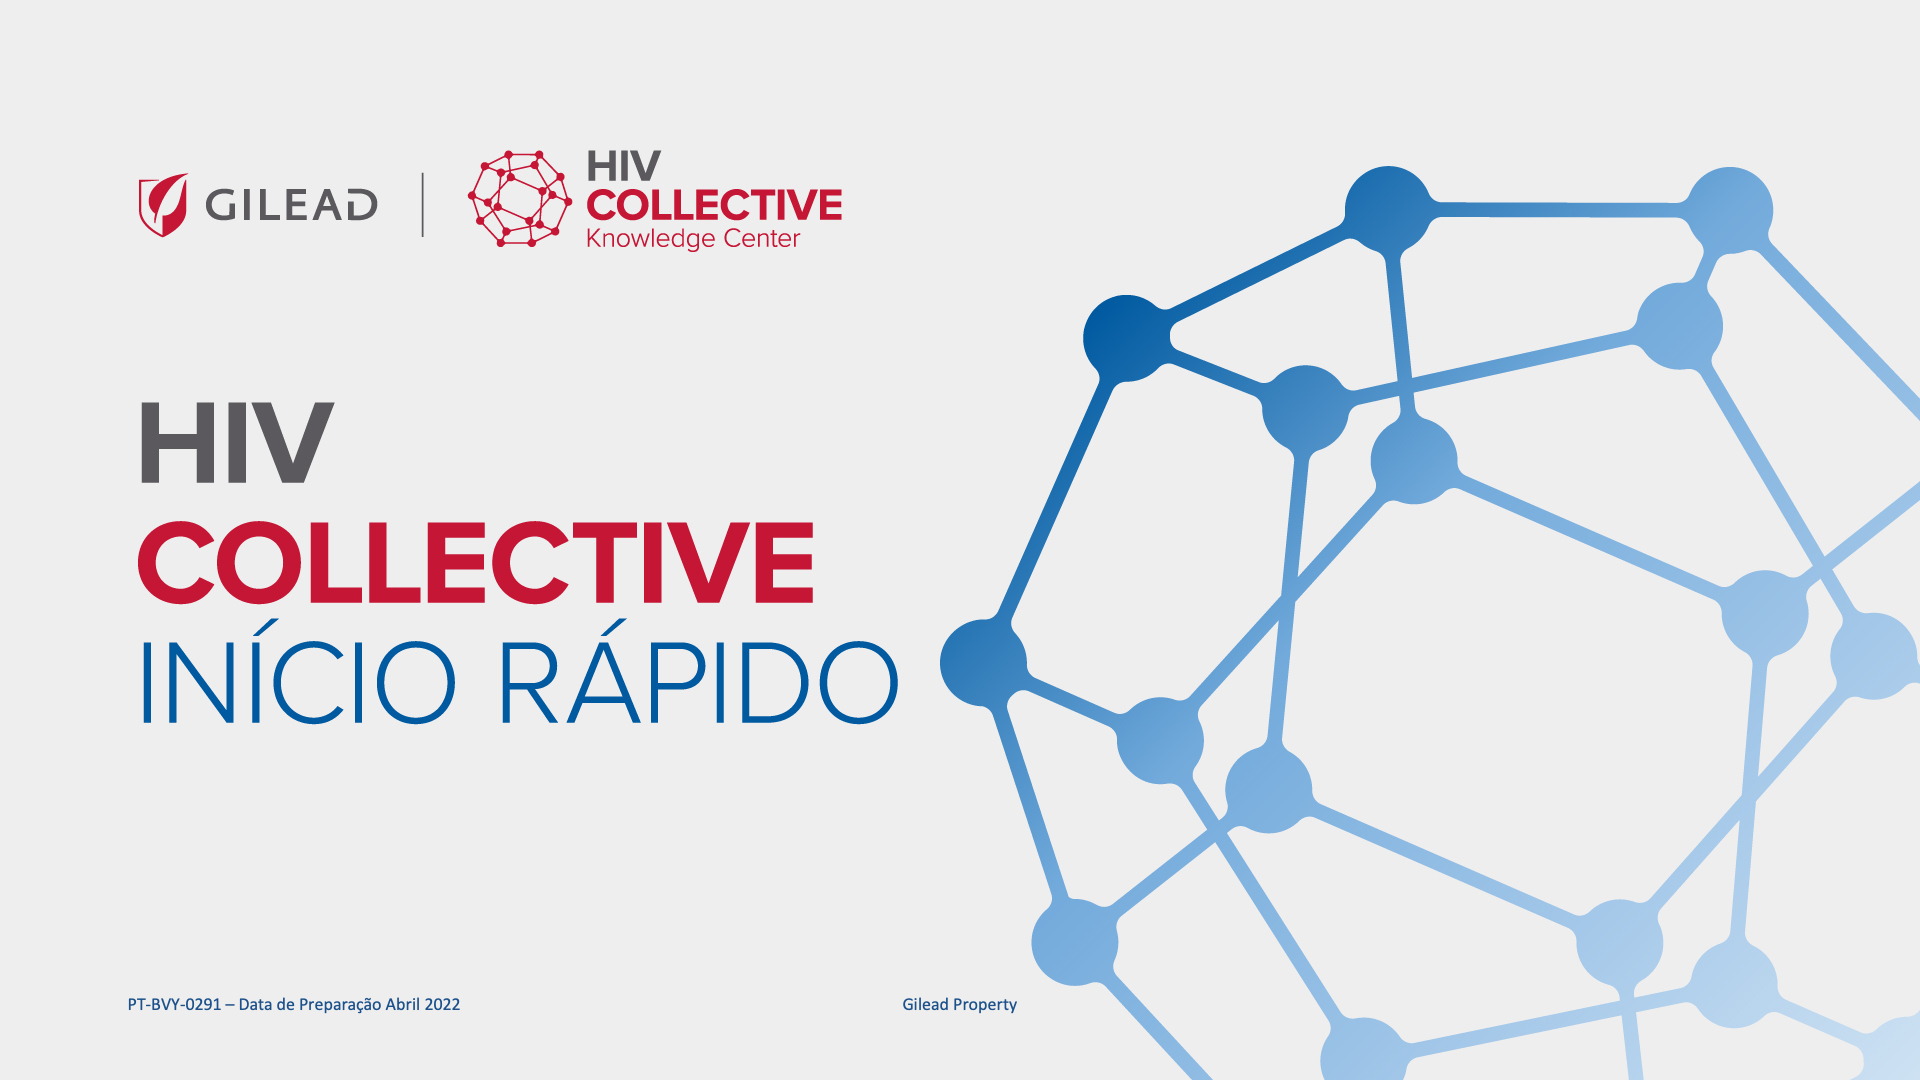 HIV Collective Knowledge Centre - Inicio Rapido